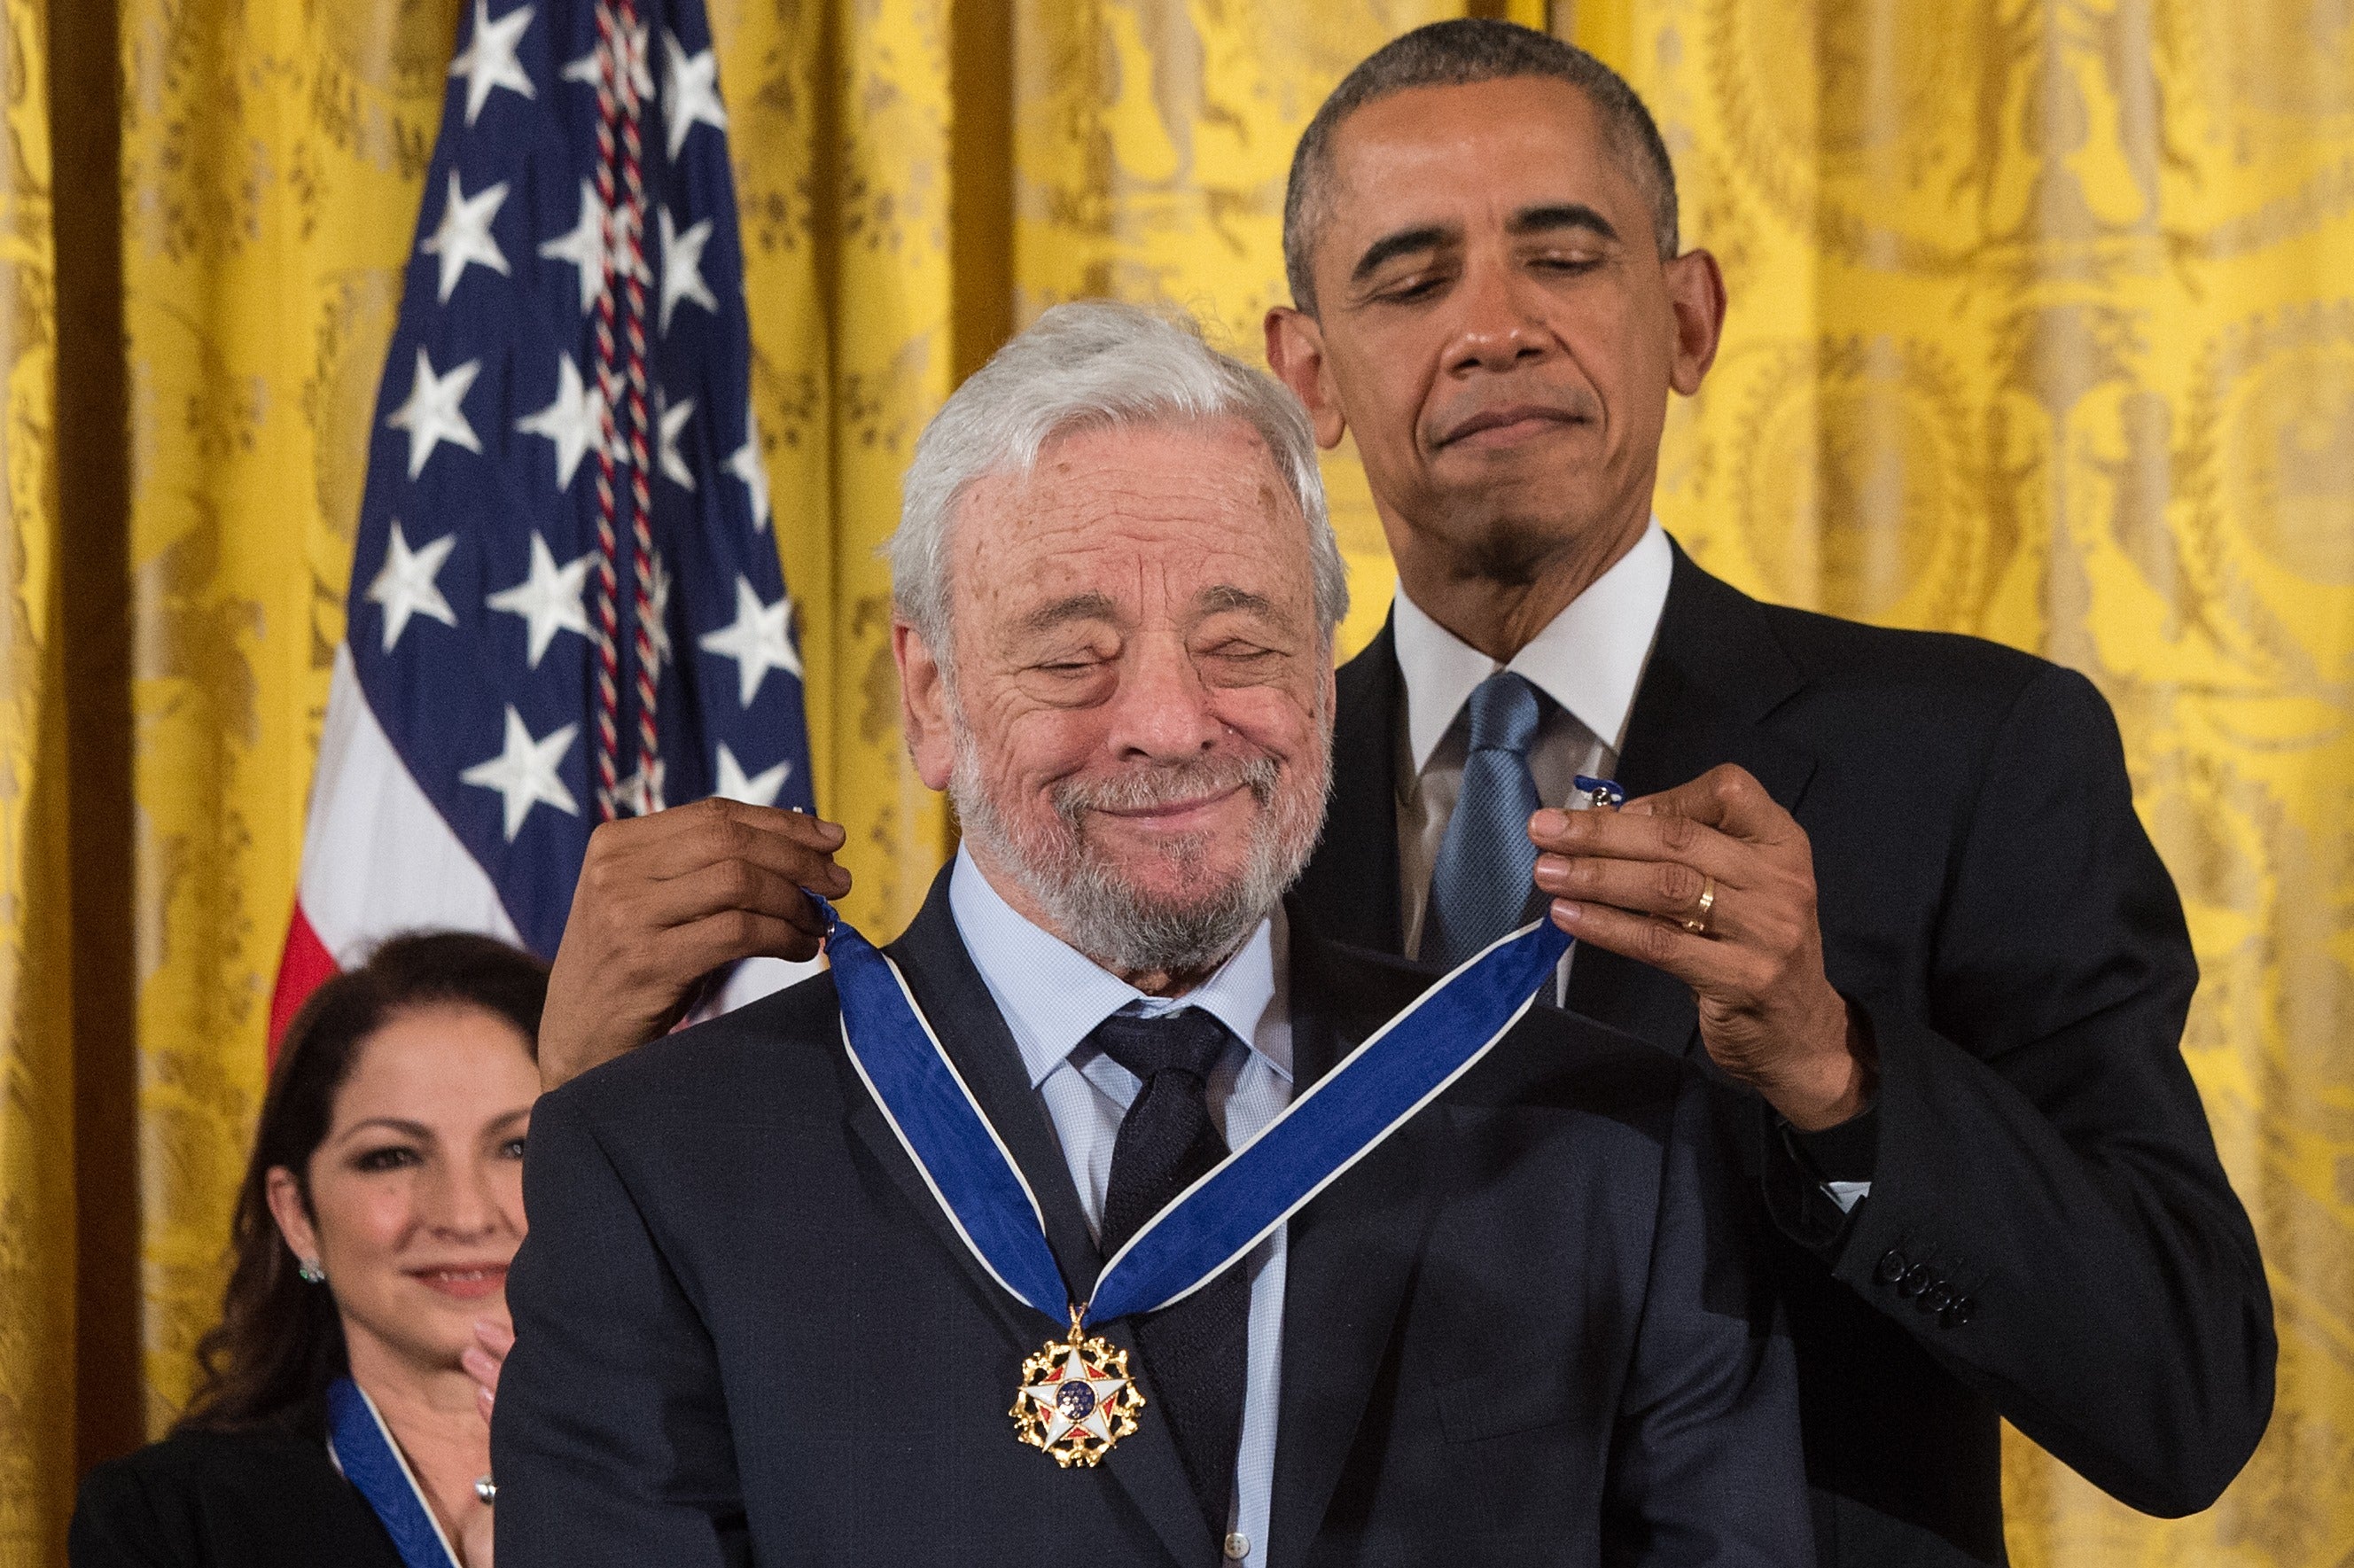 El presidente de EE.UU., Barack Obama, presenta la Medalla Presidencial de la Libertad al compositor teatral y lírico Stephen Sondheim en la Casa Blanca, Washington DC, el 24 de noviembre de 2015